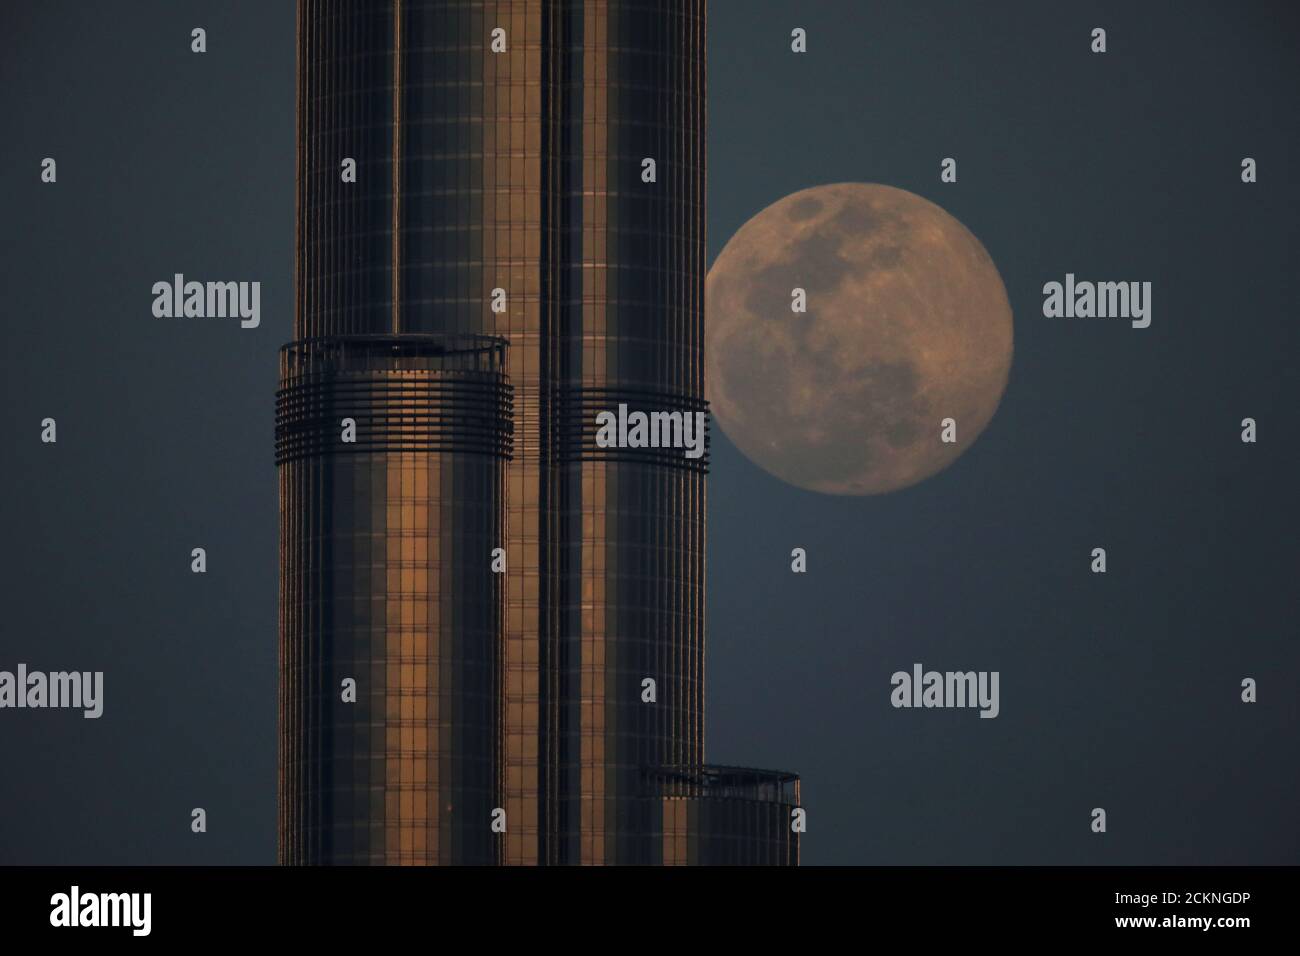 Vor dem 'Super Pink Moon' in Dubai, Vereinigte Arabische Emirate, am 7. April 2020, erhebt sich hinter dem Burj Khalifa, dem höchsten Gebäude der Welt, ein wachender, wuchtiger Mond. REUTERS/Christopher Pike Stockfoto